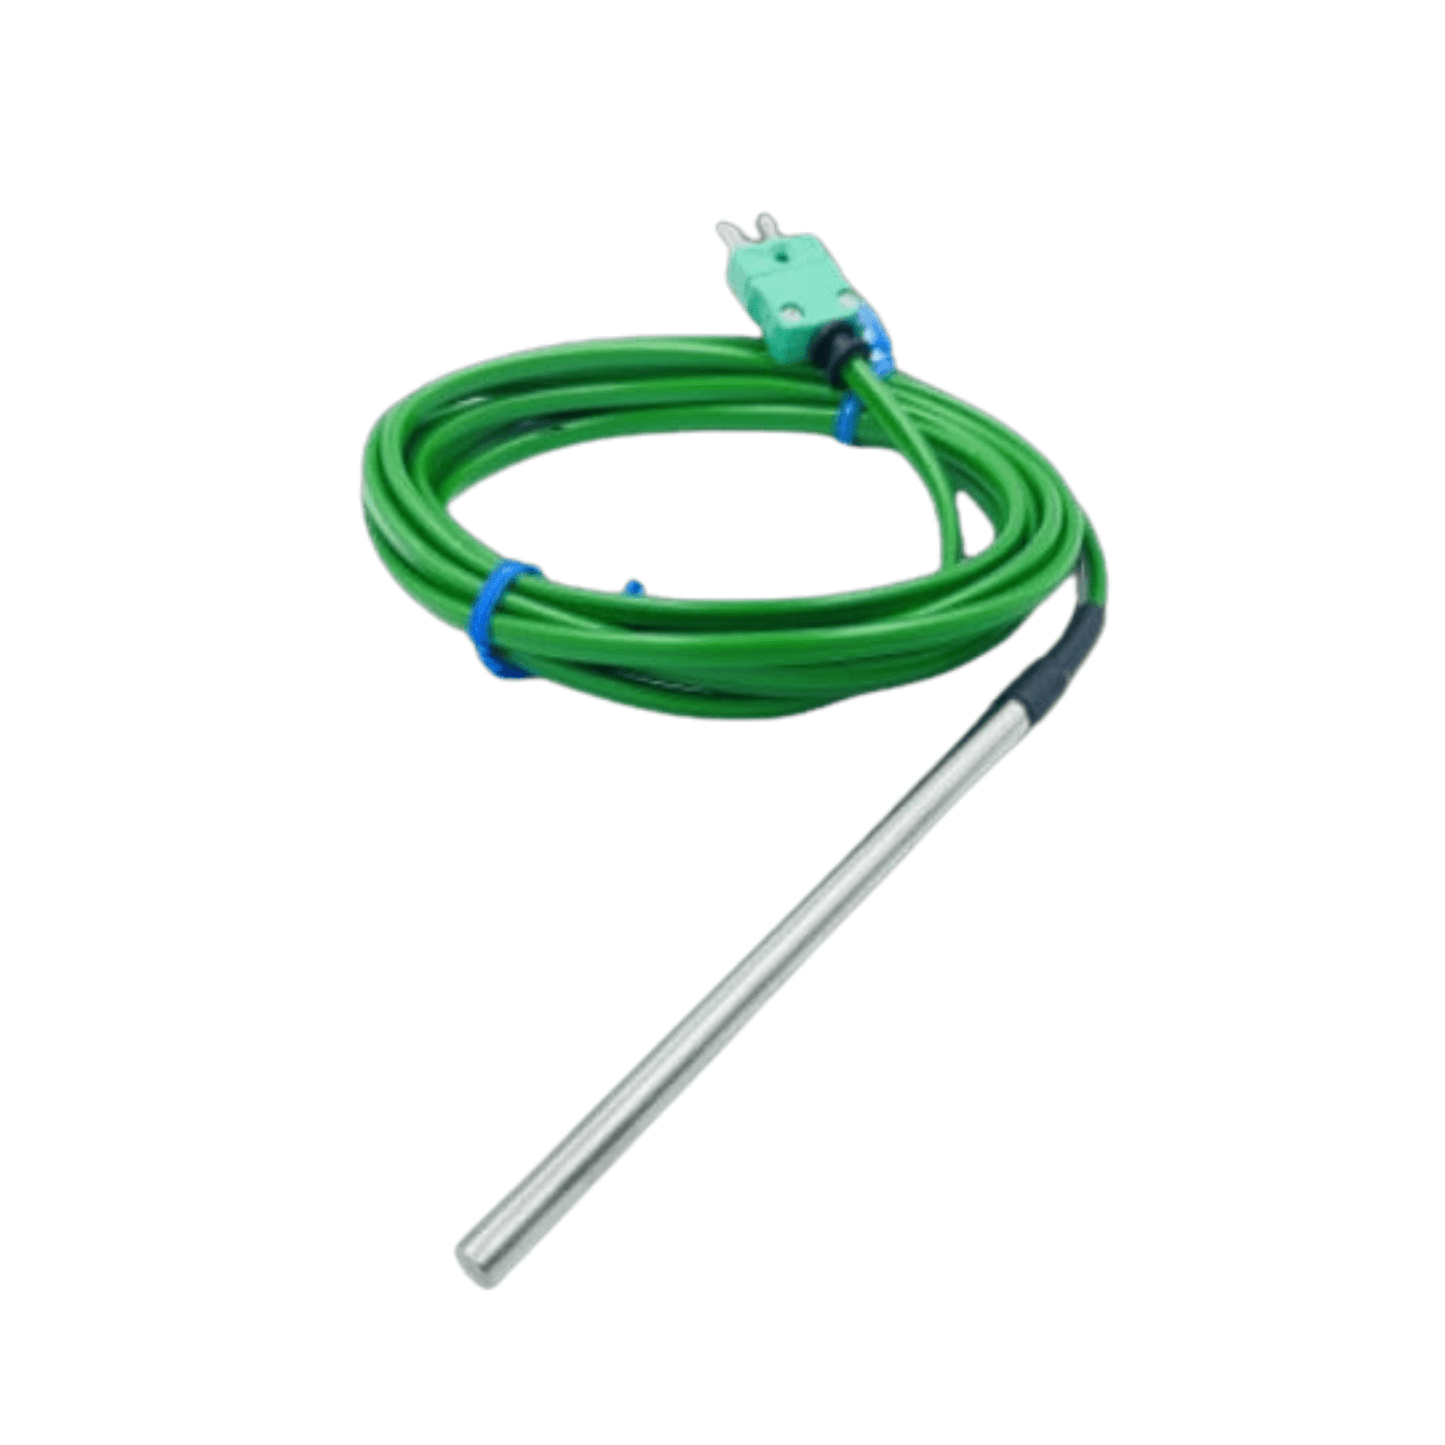 Un cavo verde con asta metallica progettato per applicazioni di temperatura, la sonda di temperatura per uso generale Thermometer.fr diametro 6 mm.